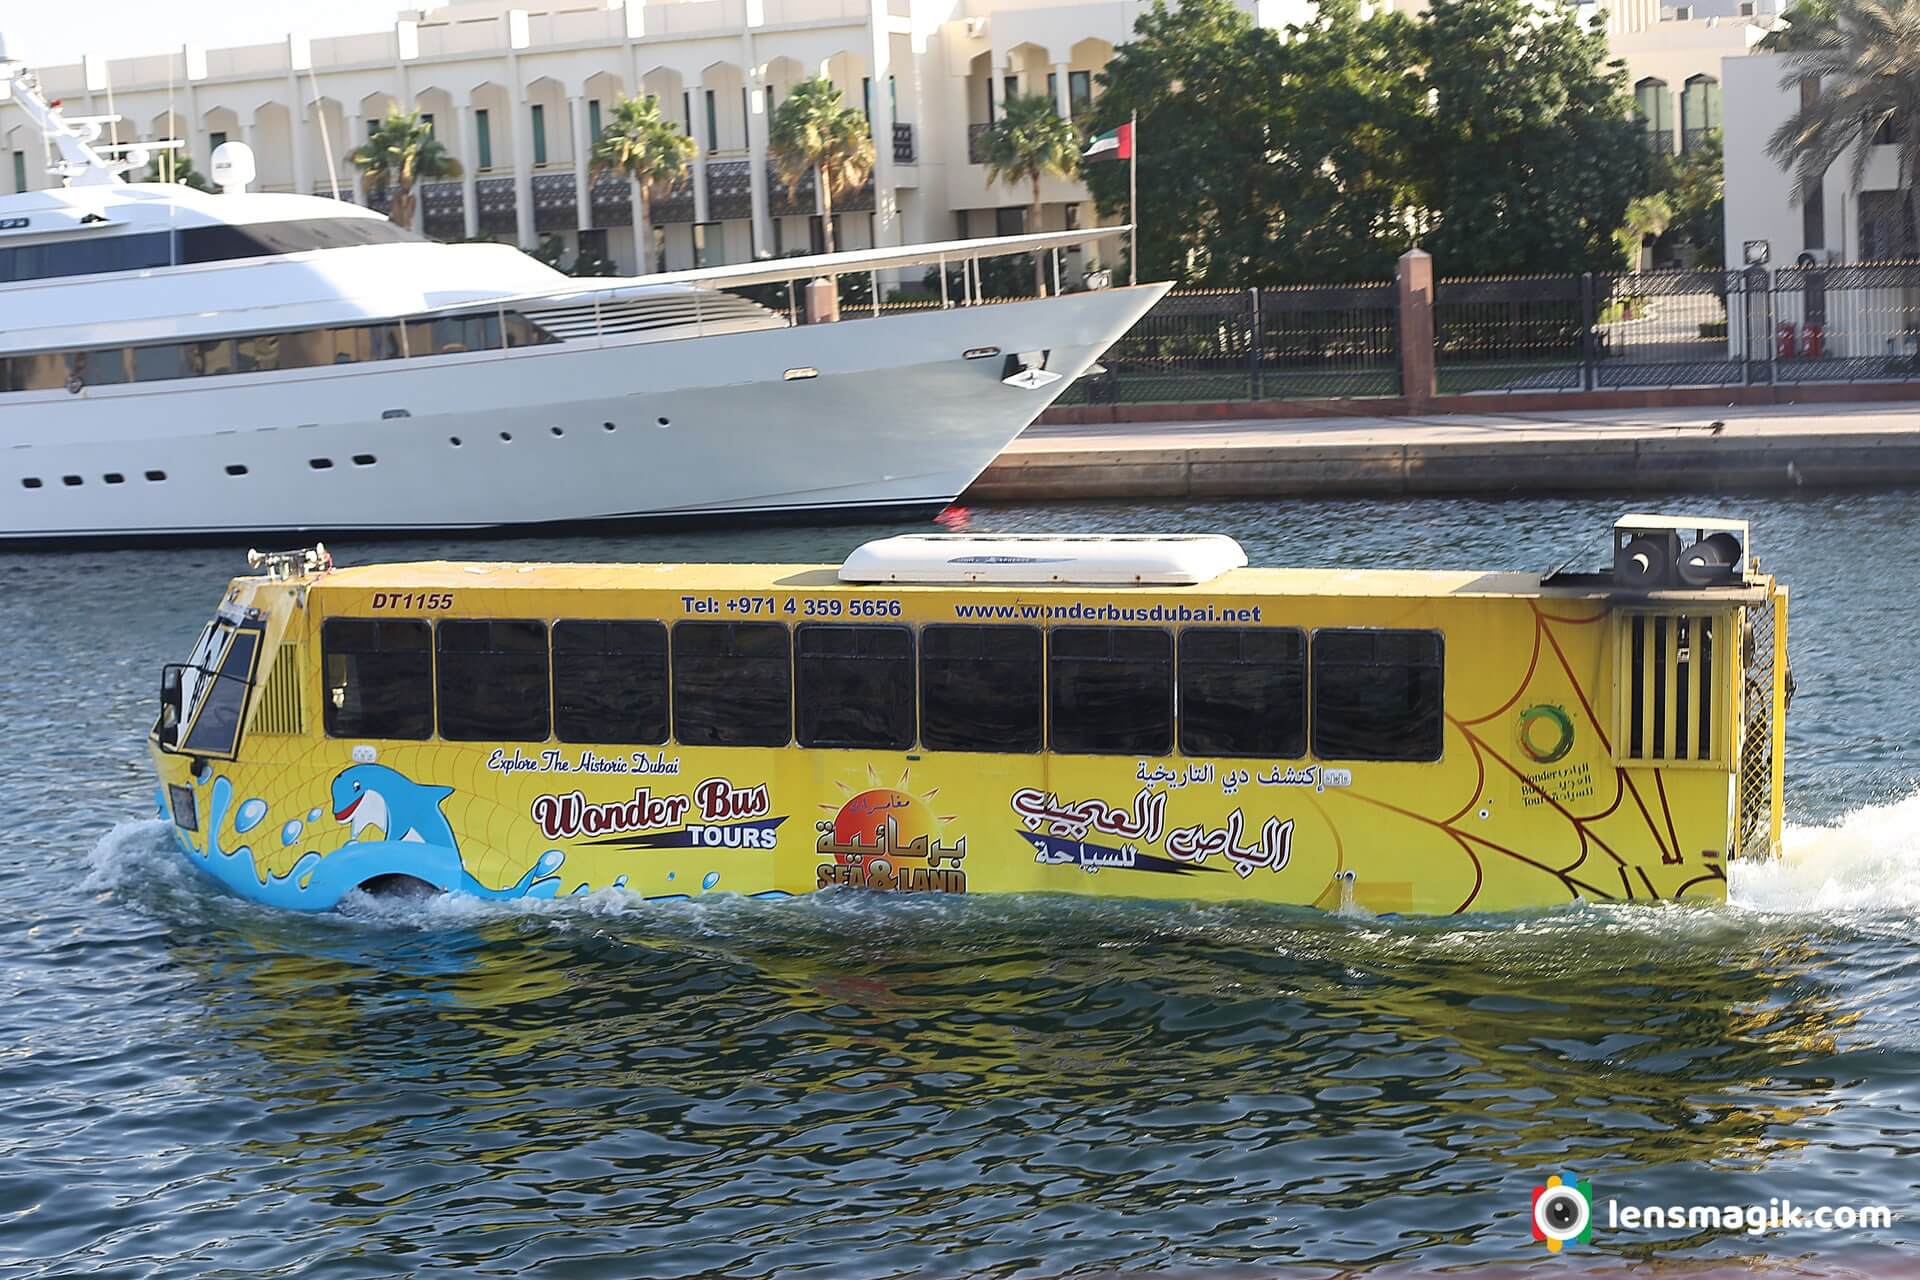 Water bus Dubai